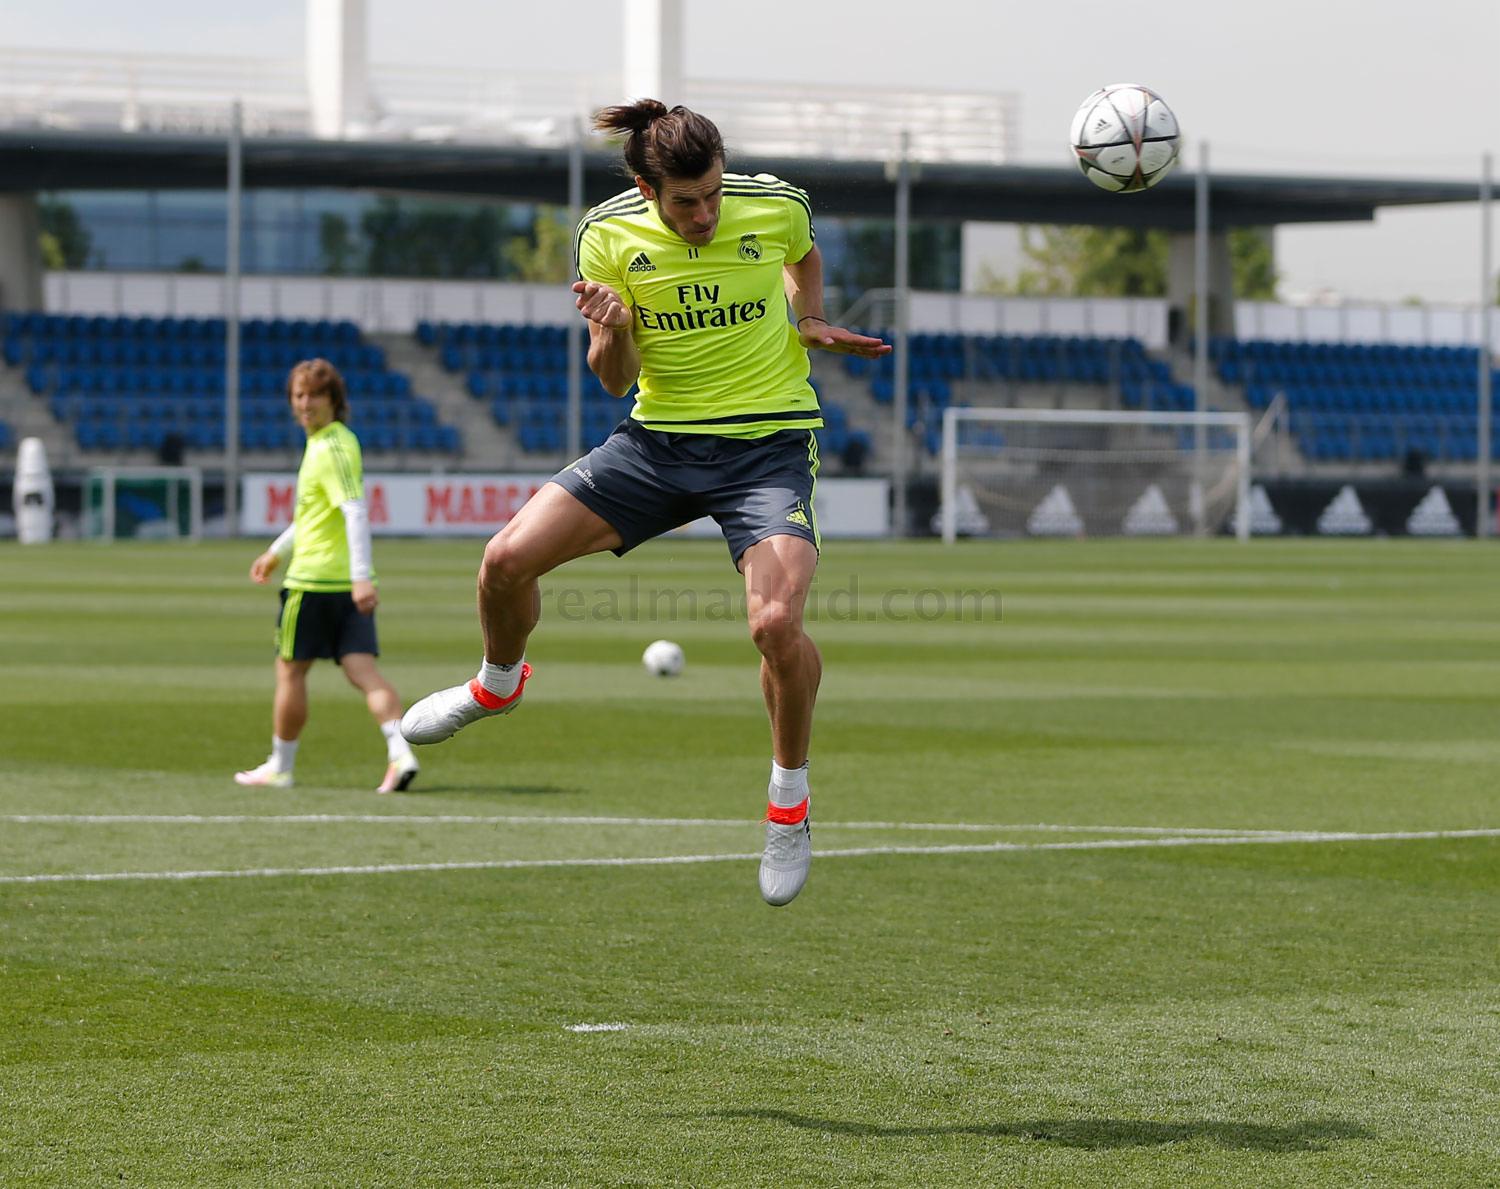 Adidas x Gareth Bale. Footy Москва от 3 лет отзывы фото.